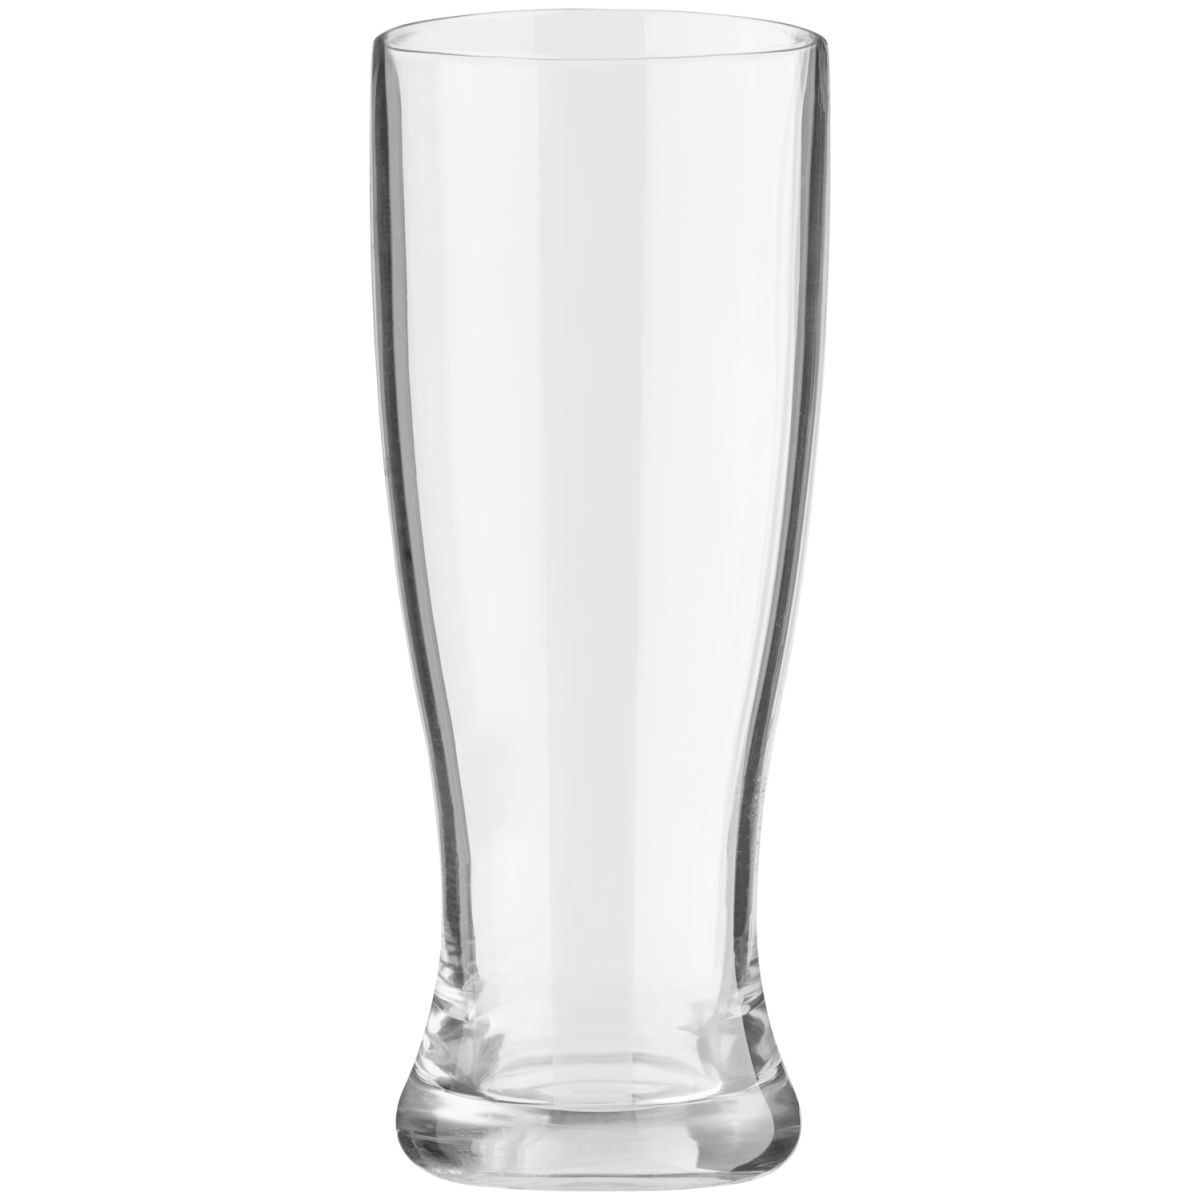 Vega Weizenbierglas Kanpo van kunststof; 420ml, 7.2x17.8 cm (ØxH); transparant; 12 stuk / verpakking